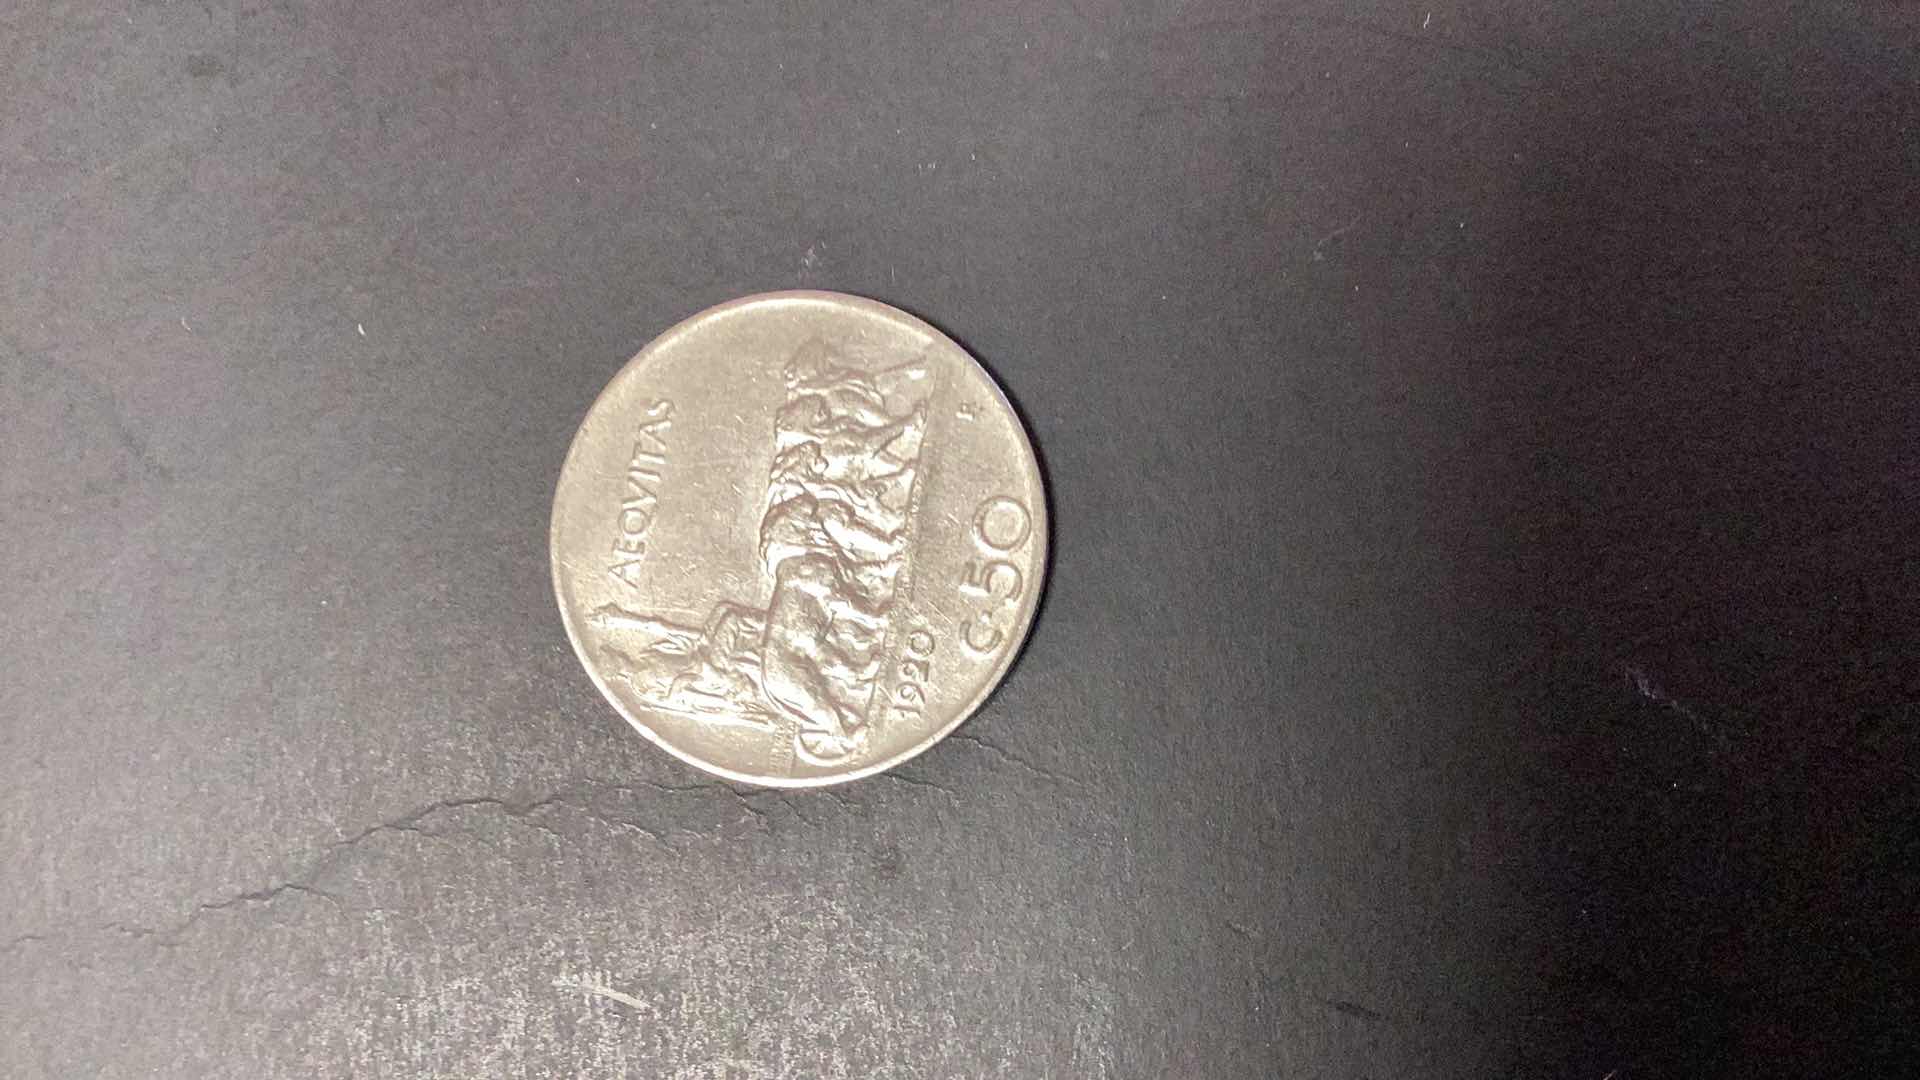 Photo 2 of $26.00 1920 ITALY 50 CENTESIMI COIN